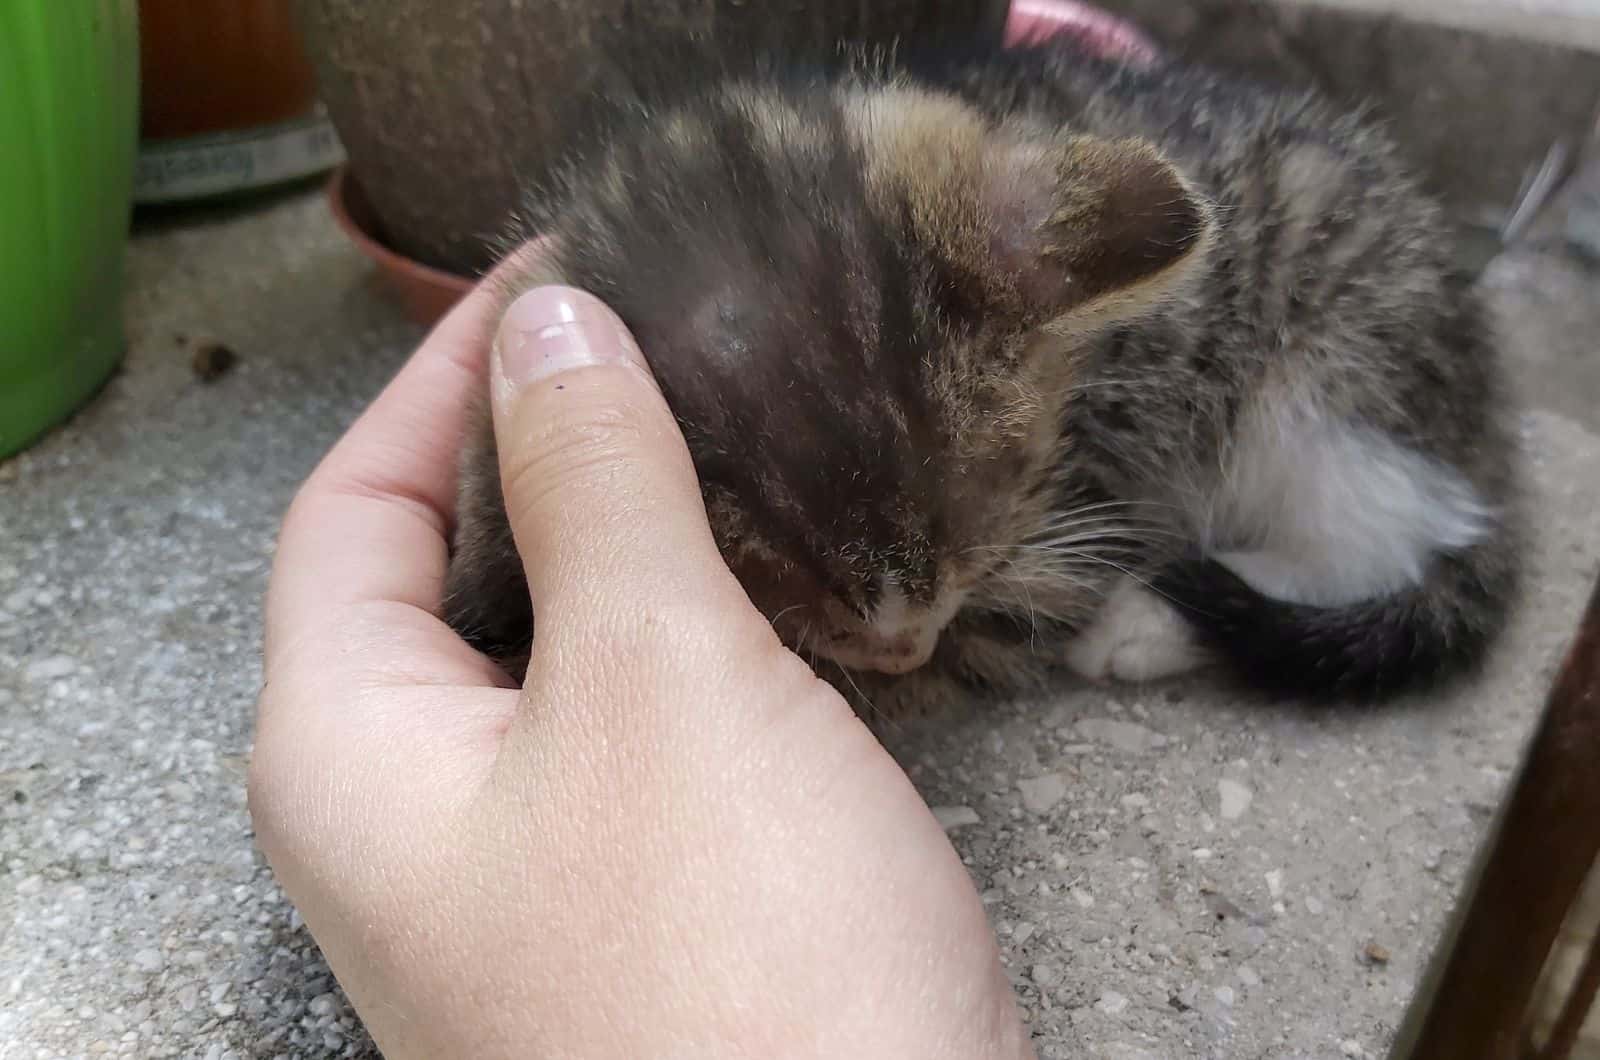 petting rescued kitten